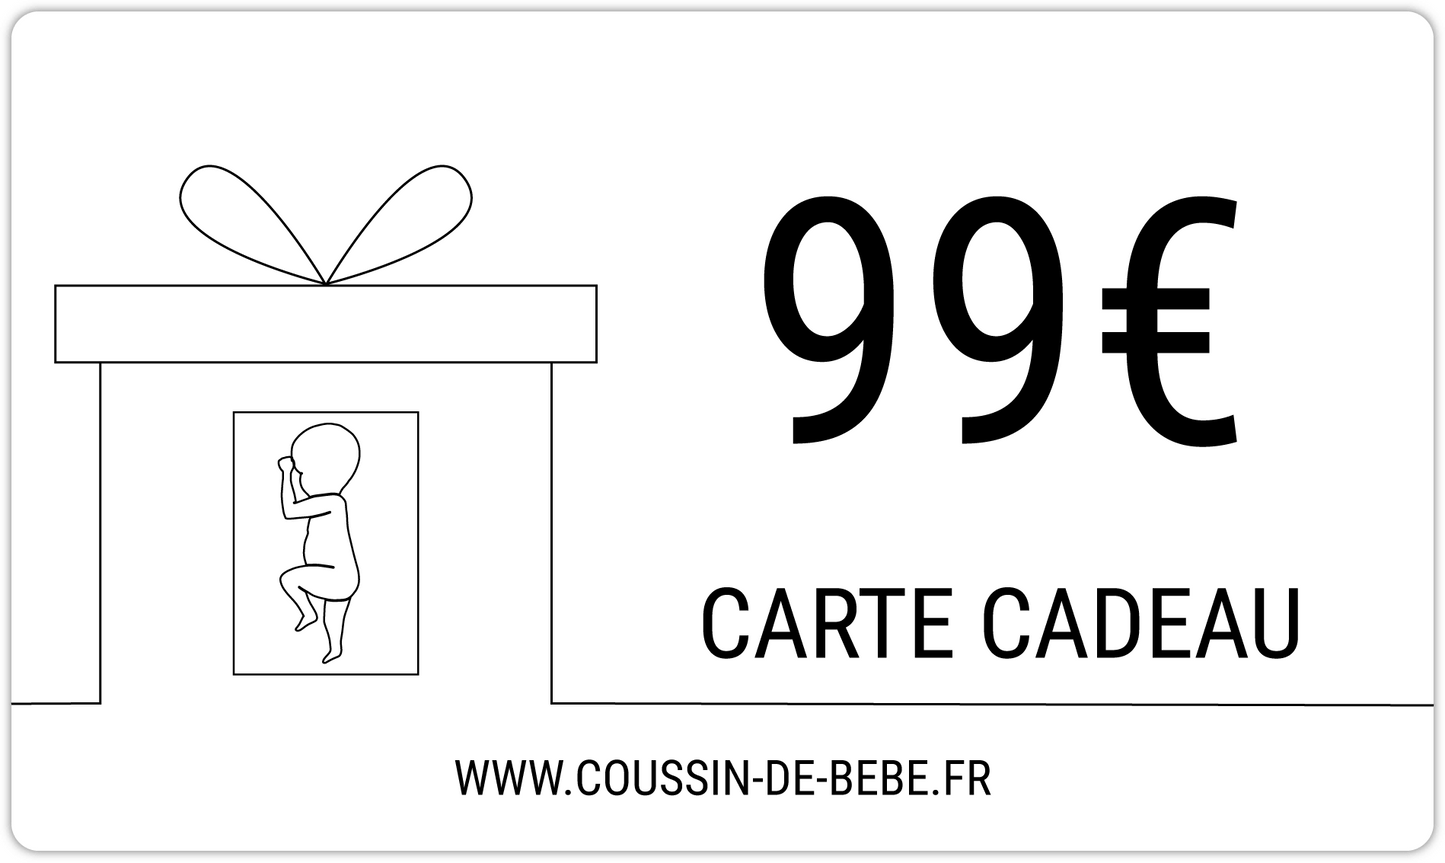 COUSSIN DE BÉBÉ - CARTE CADEAU